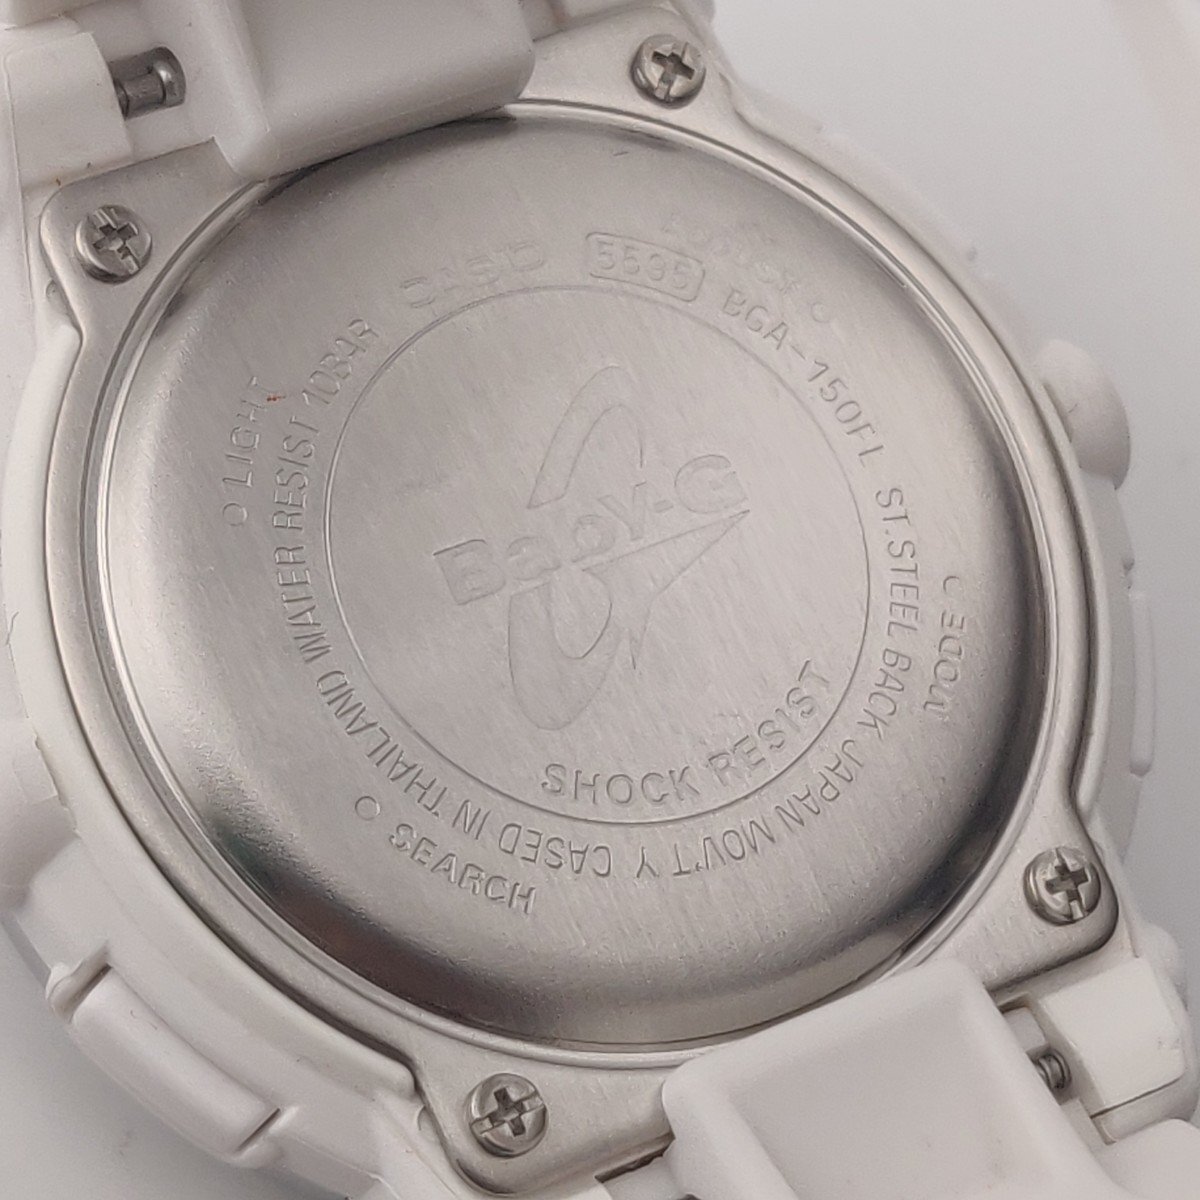 2945☆【カシオ】 ベビージー 腕時計 Floral Dial Series BGA-150FL-7AJF ワールドタイム カレンダー機能搭載 100m防水 ホワイト【0216】_画像5